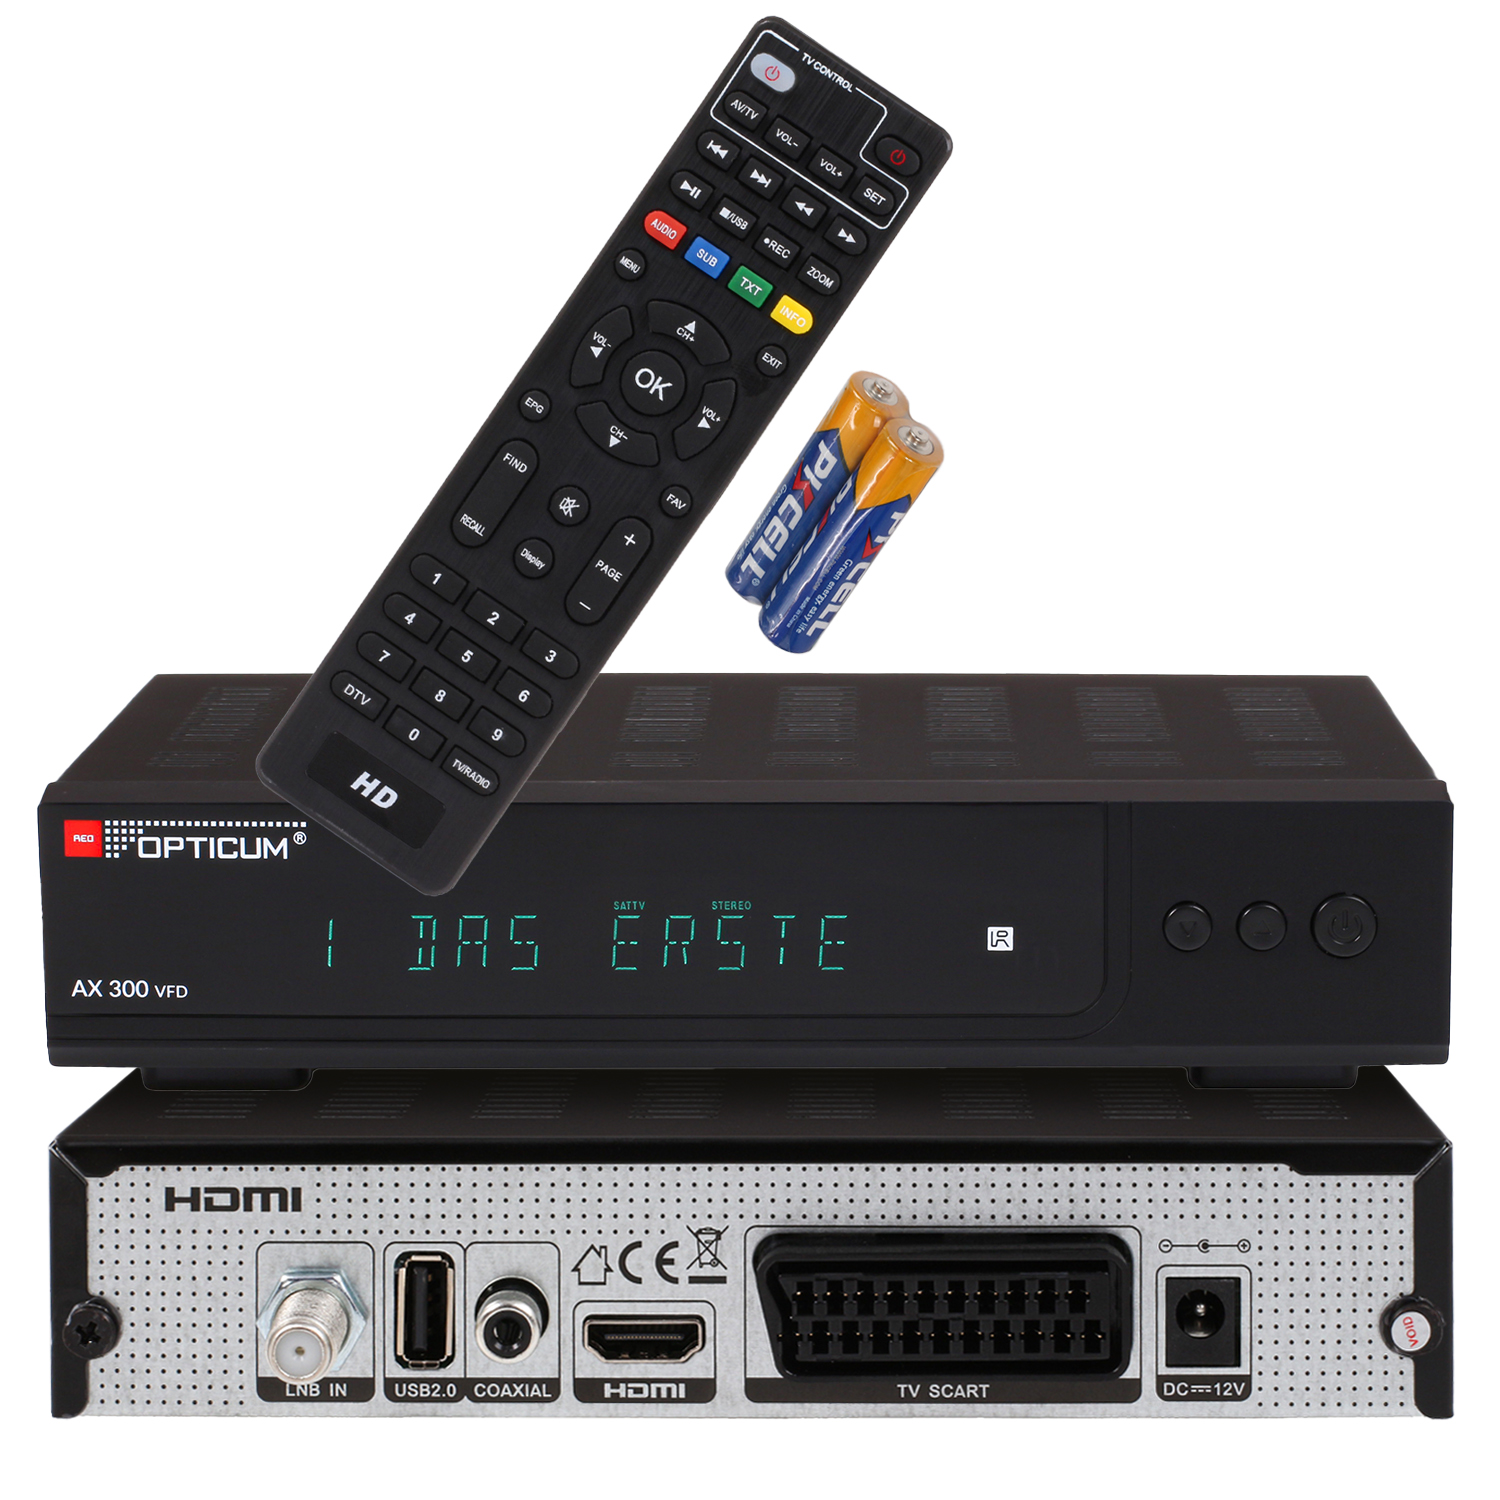 RED DVB-S, mit HD-TV AX I Satelliten-Receiver Sat V Receiver VFD Digitaler DVB-S2, 12 (HDTV, Receiver 300 - OPTICUM DVB-S2 Display schwarz) alphanumerischem